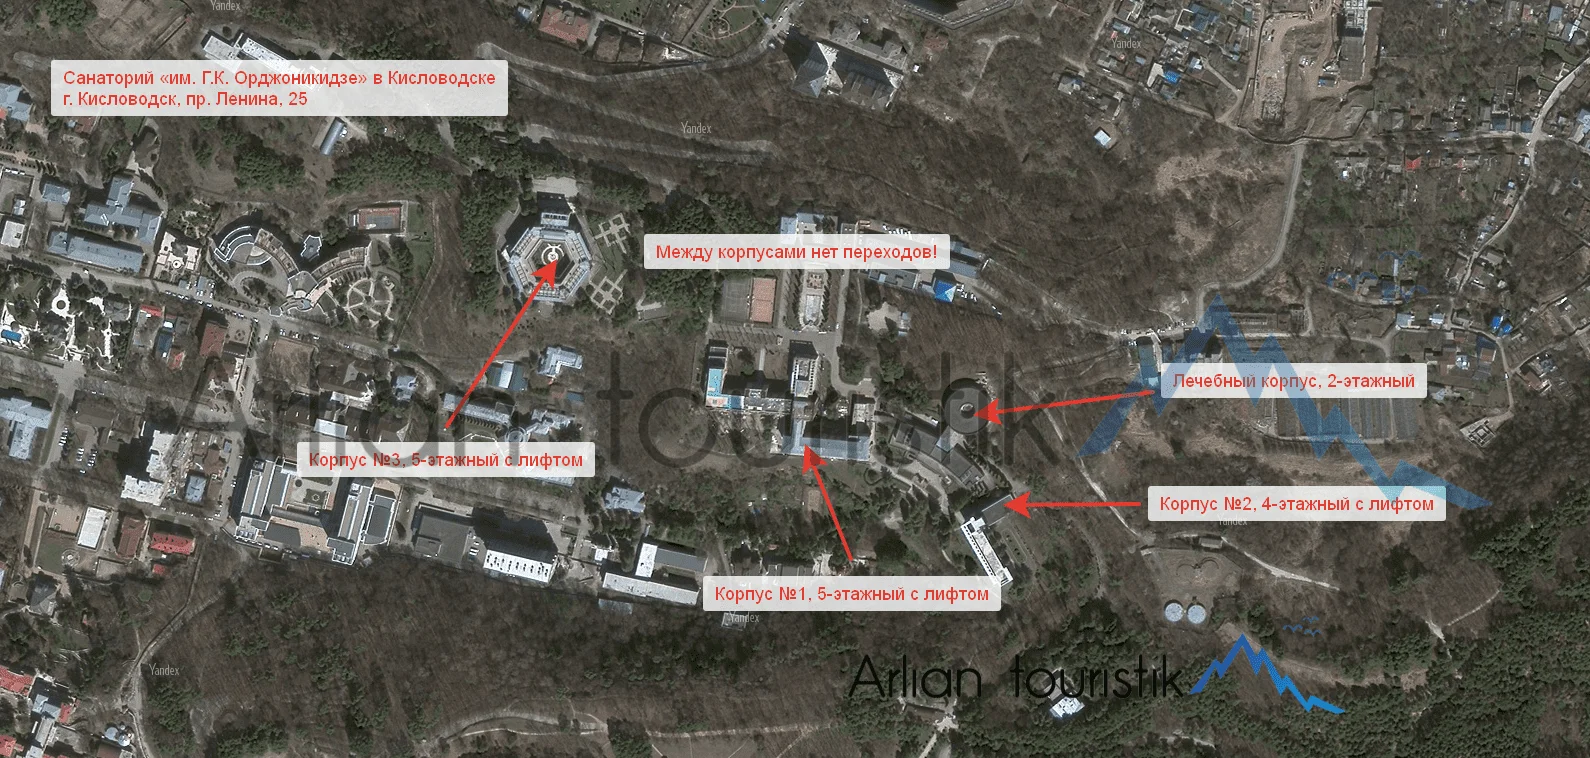 Расположение корпусов санатория «им. Г.К. Орджоникидзе» (Кисловодск) План-схема, инфраструктура.